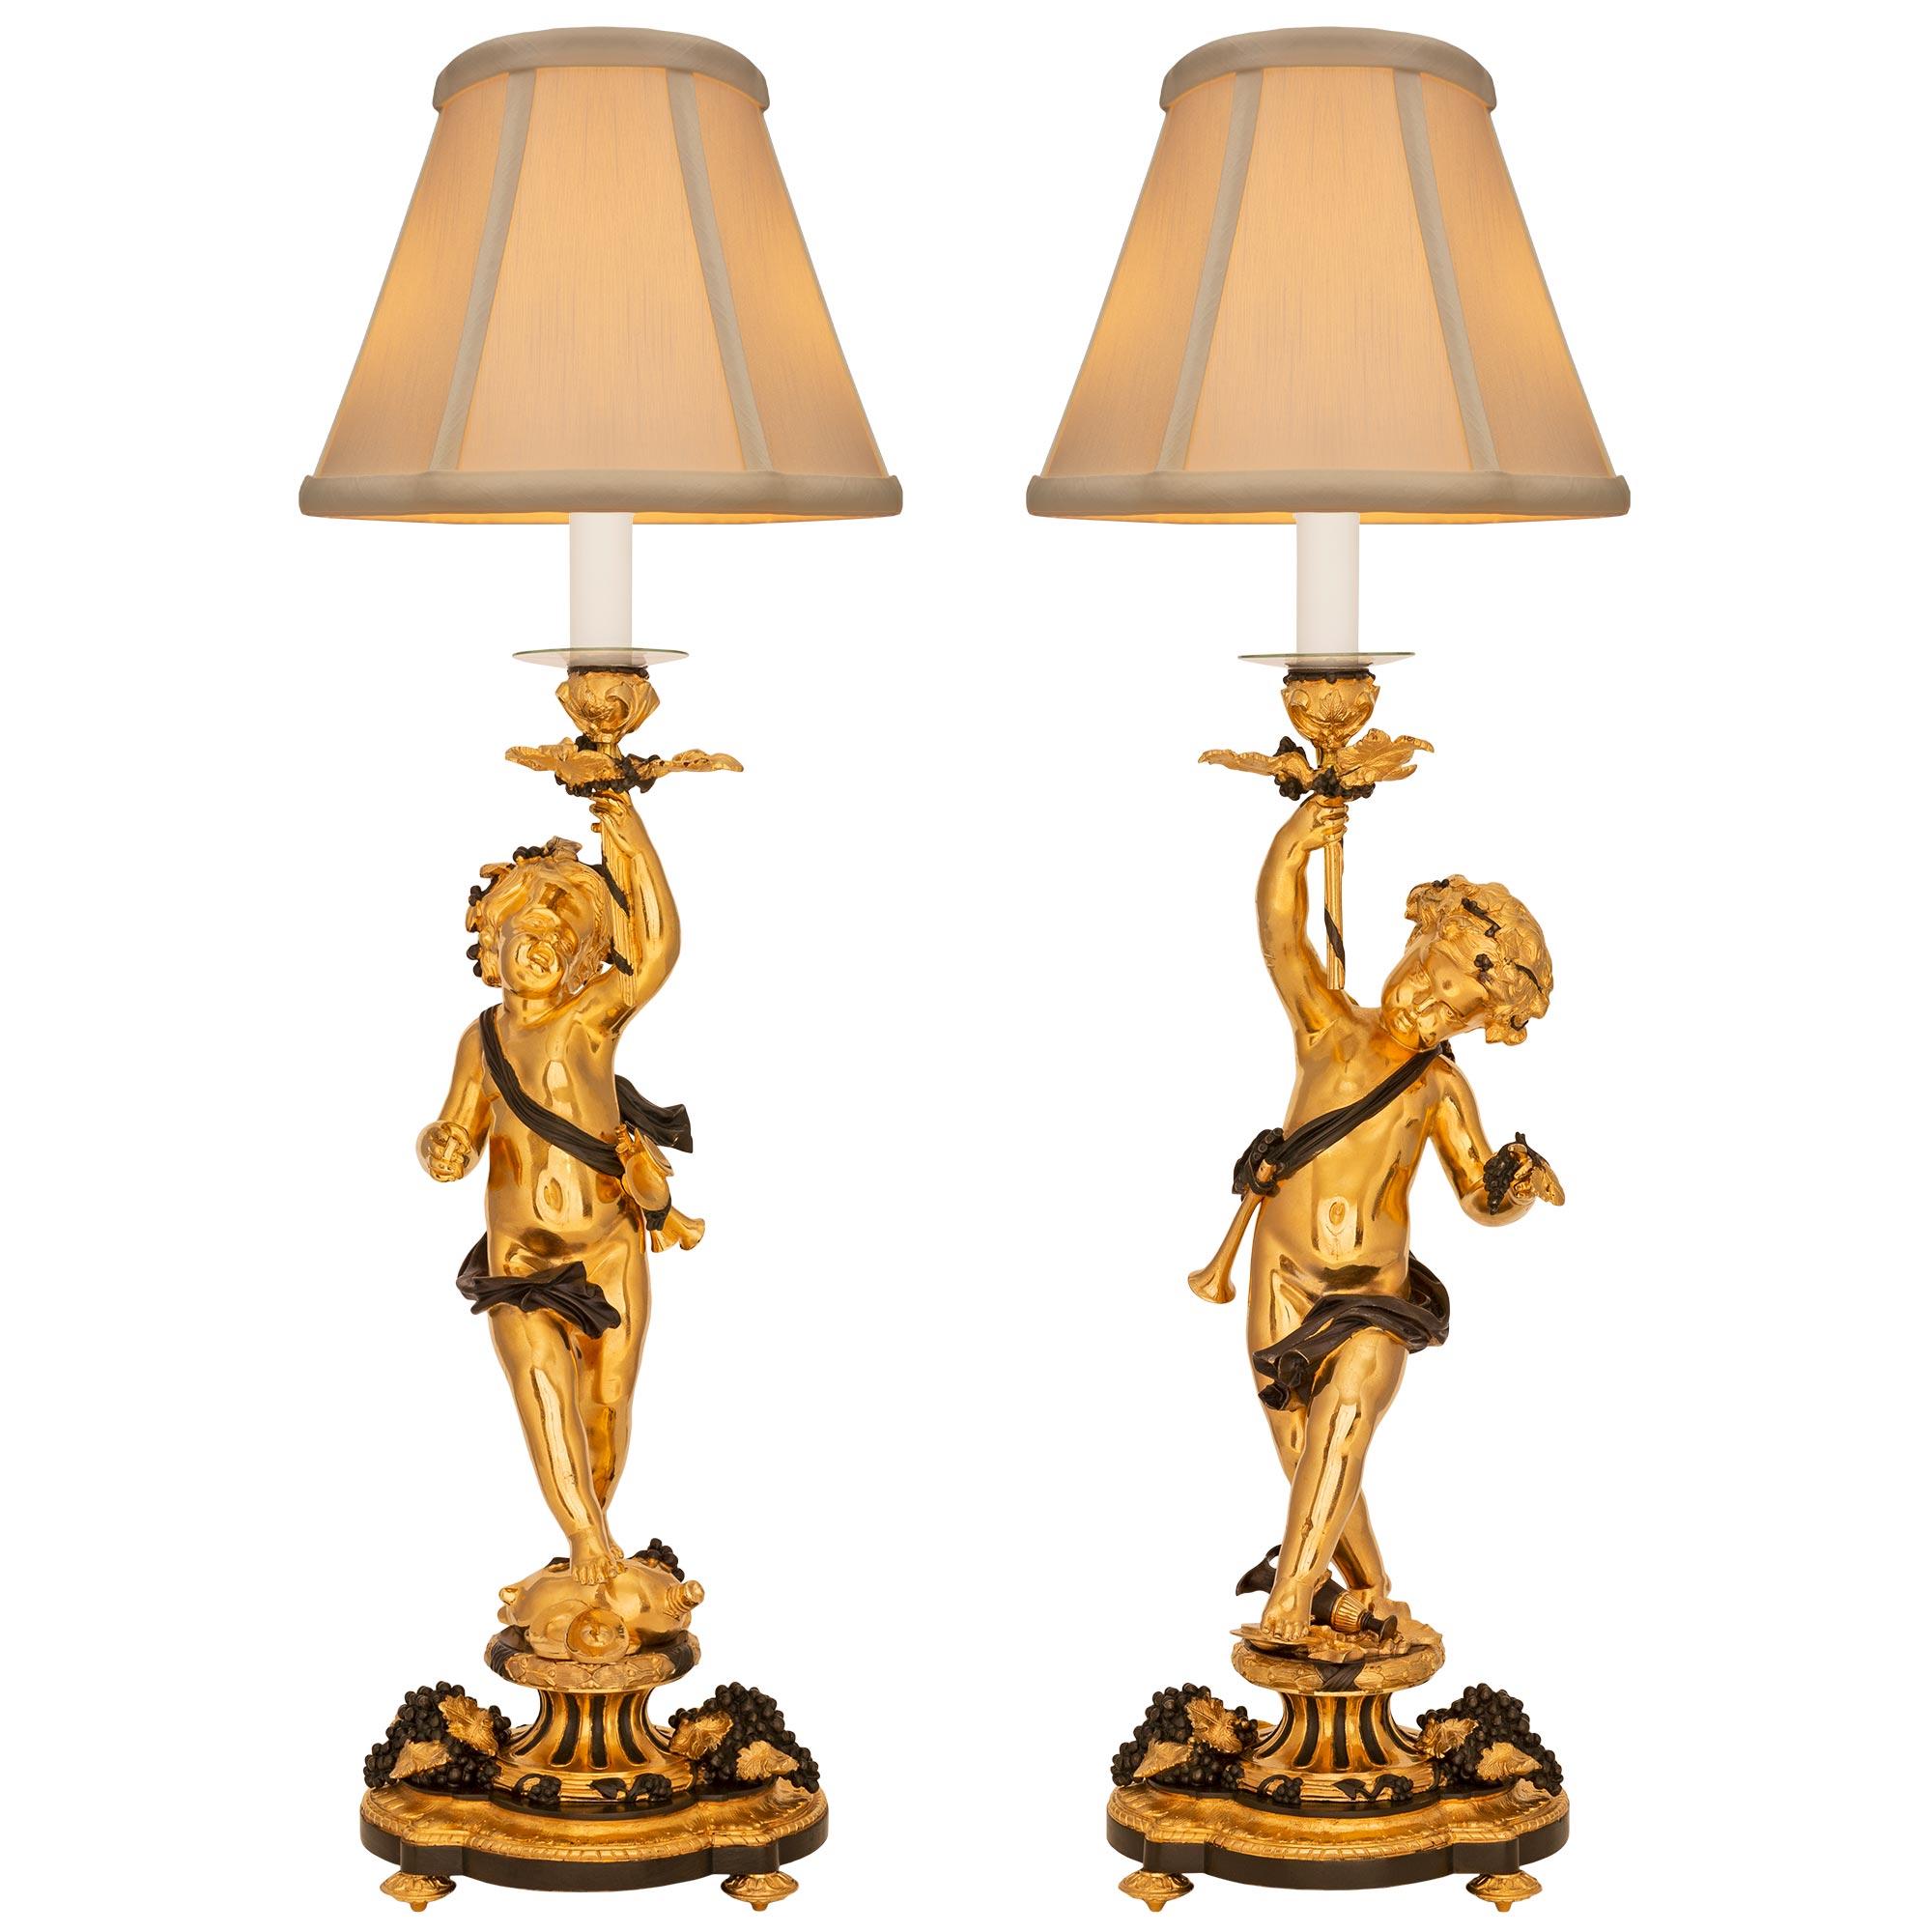 Ein bemerkenswertes und äußerst dekoratives Paar französischer Lampen aus der Belle Époque des 19. Jahrhunderts aus Ormolu und patinierter Bronze. Jede Leuchte steht auf einem eleganten Sockel in Wellenform mit feinen, blattförmigen Füßen, hübschen